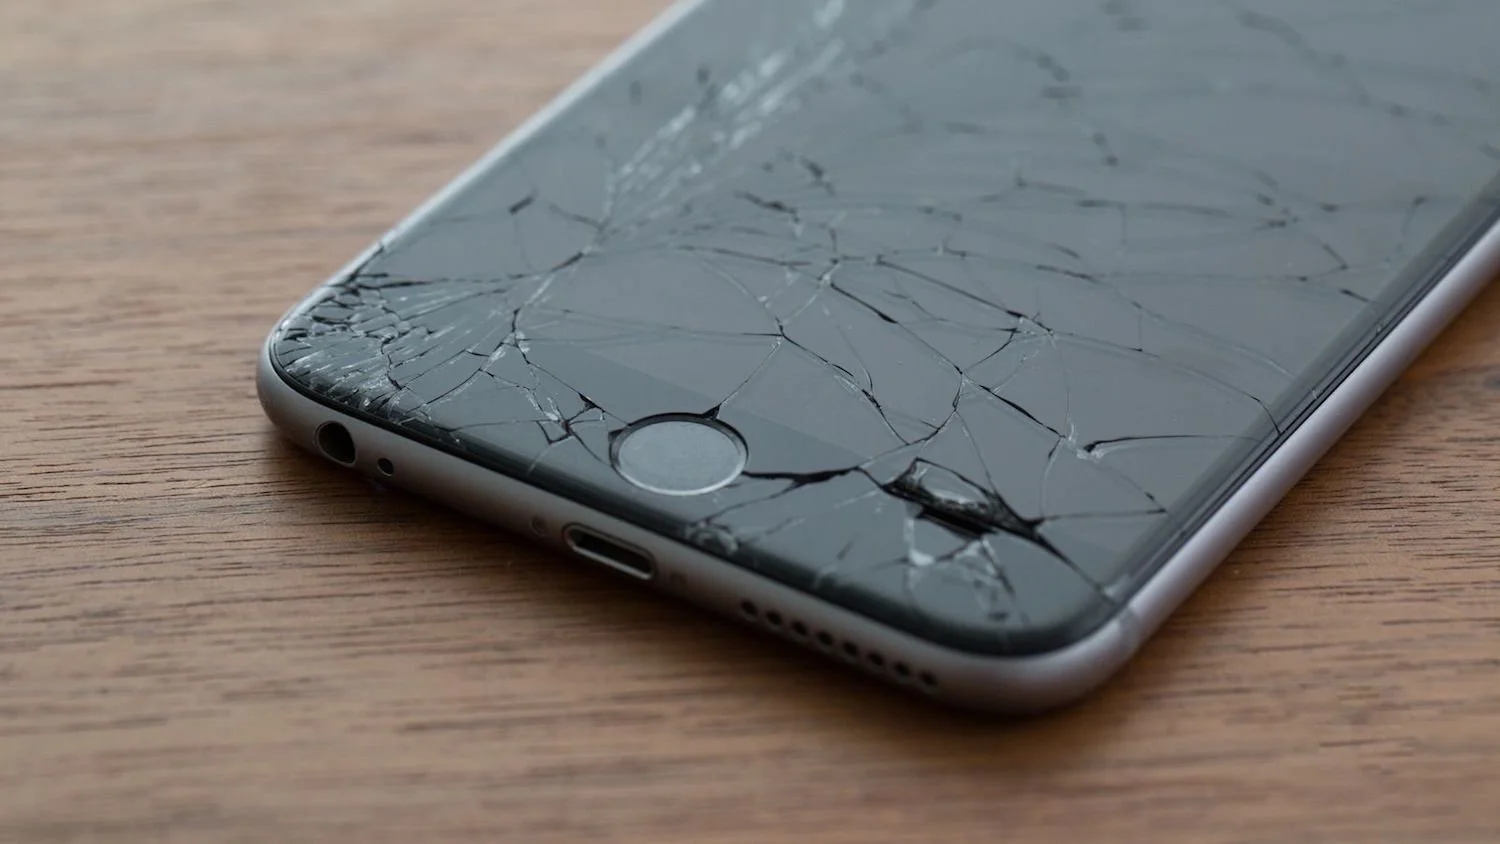 Возмутительно! Apple может блокировать iPhone с неоригинальными деталями - фото 1